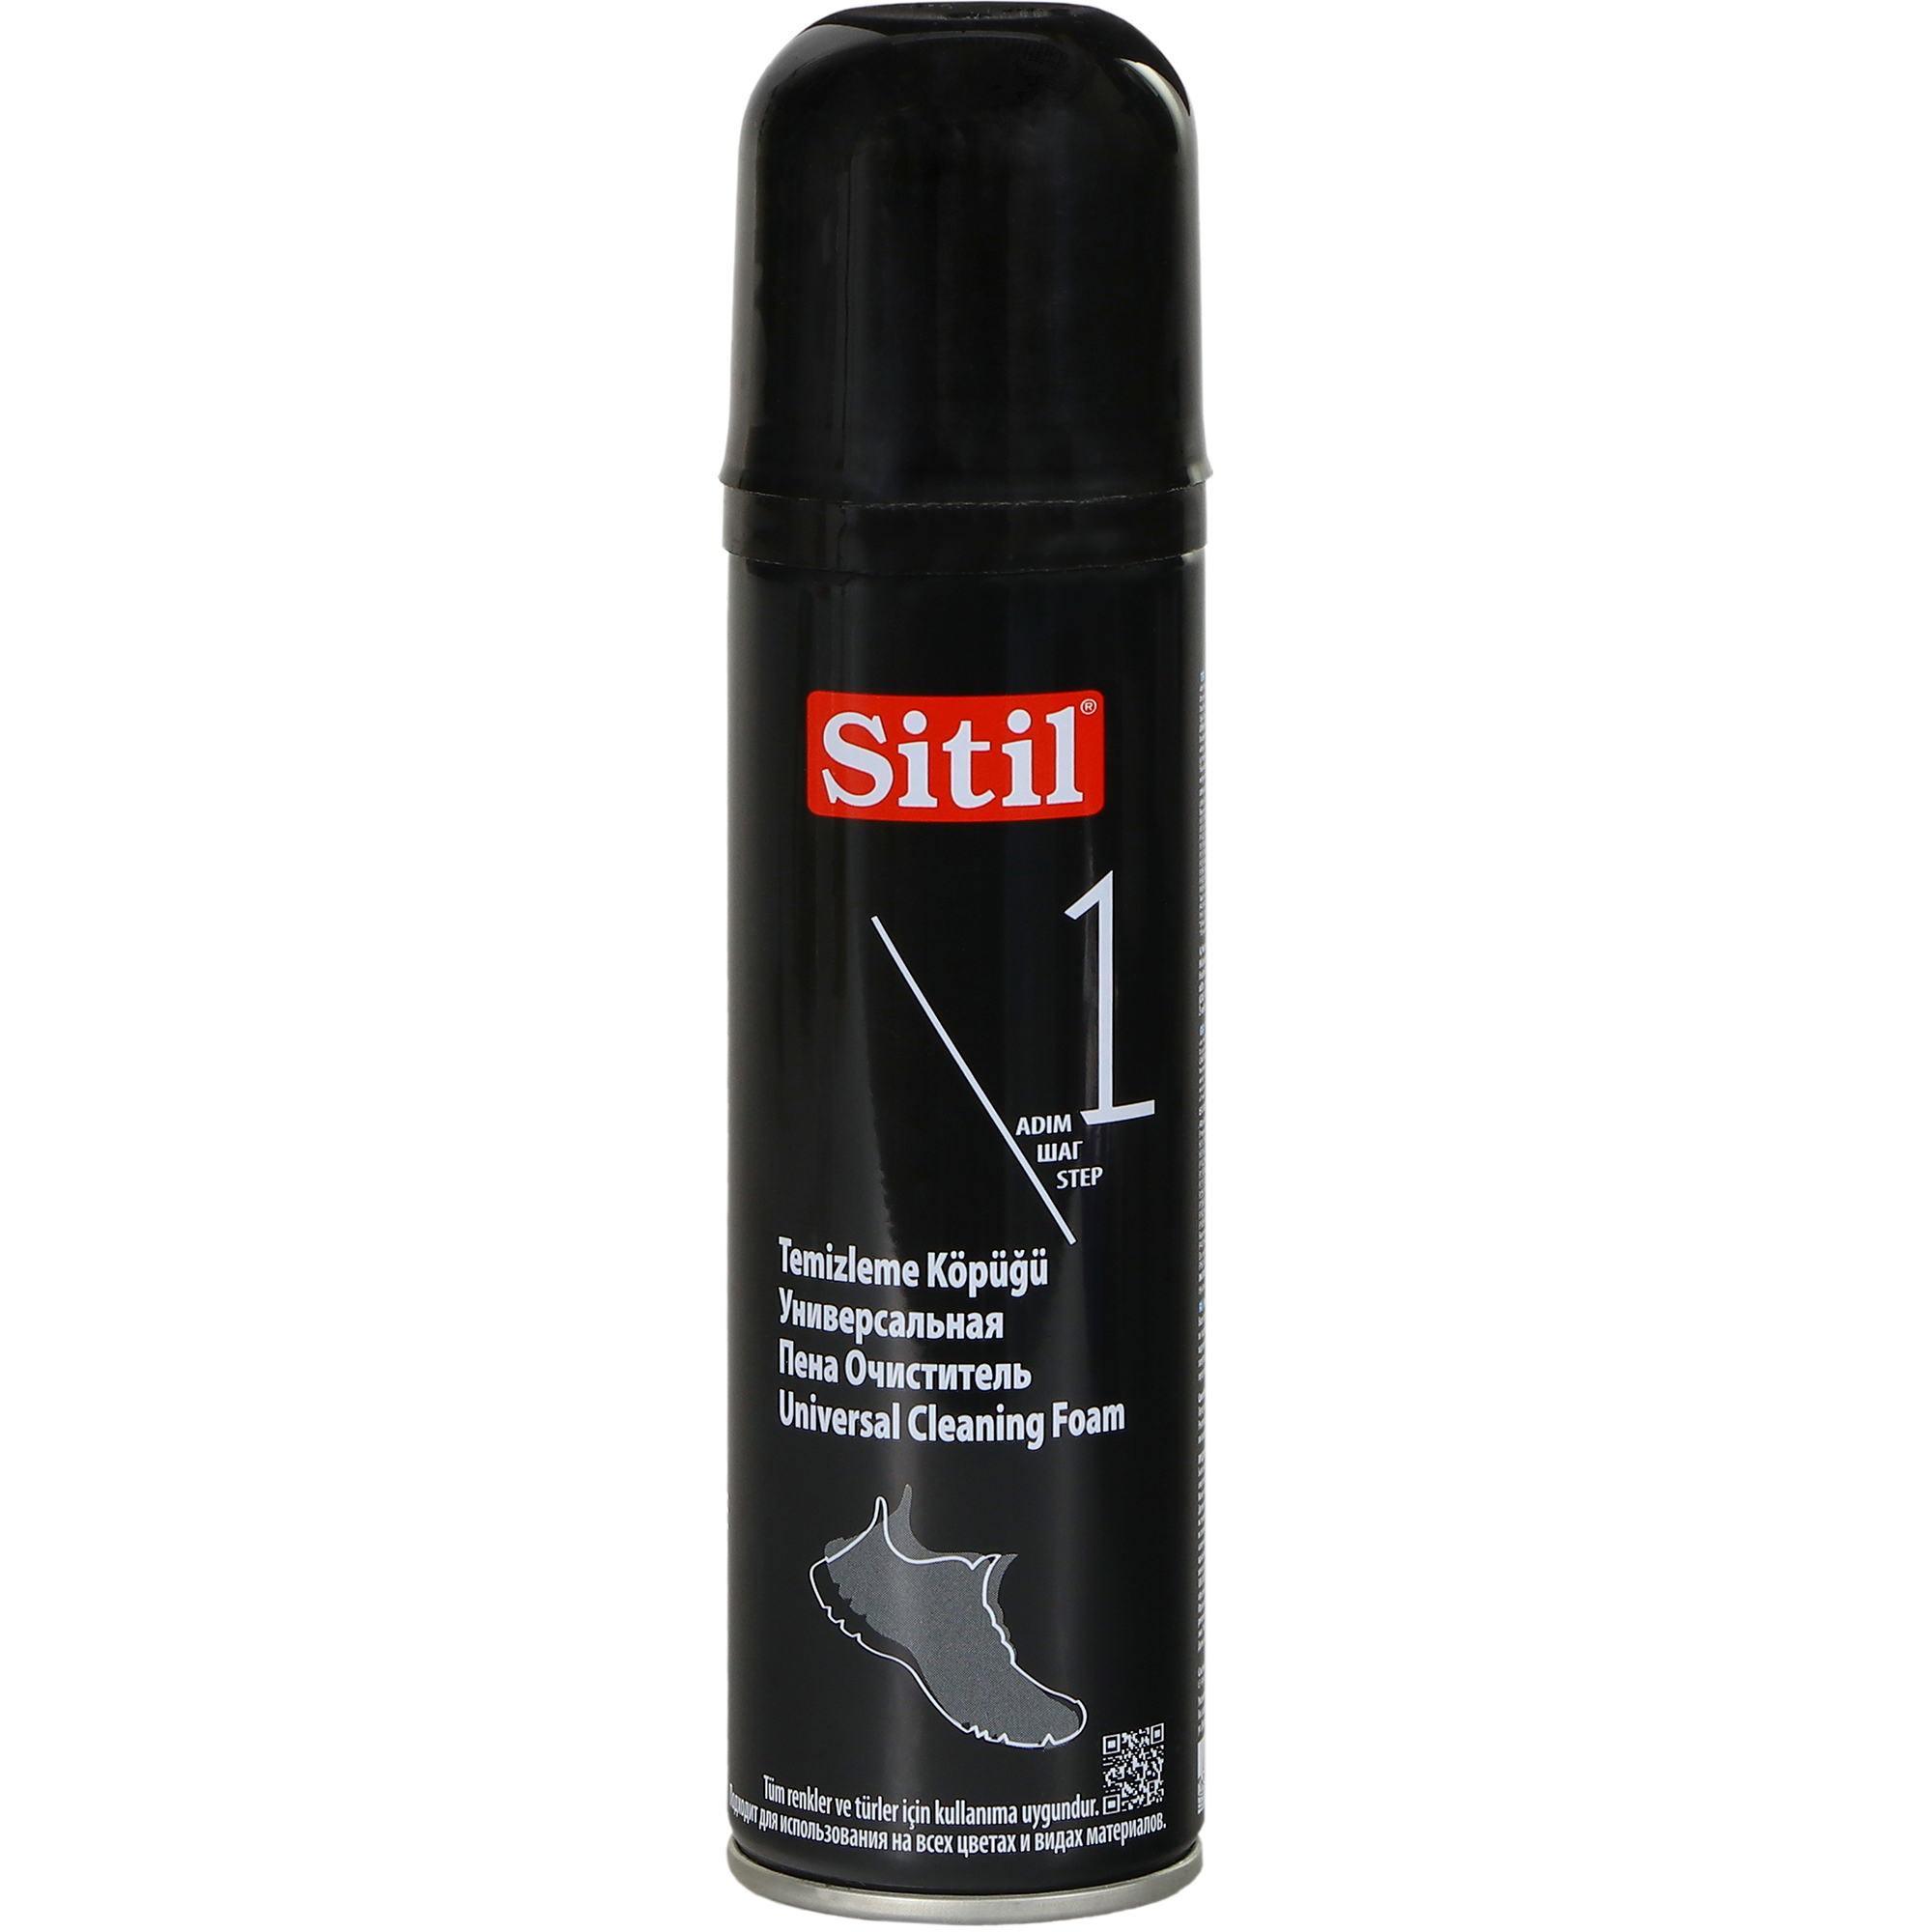 Пена-очиститель Sitil универсальная 150 мл пена очиститель штрих 150 мл